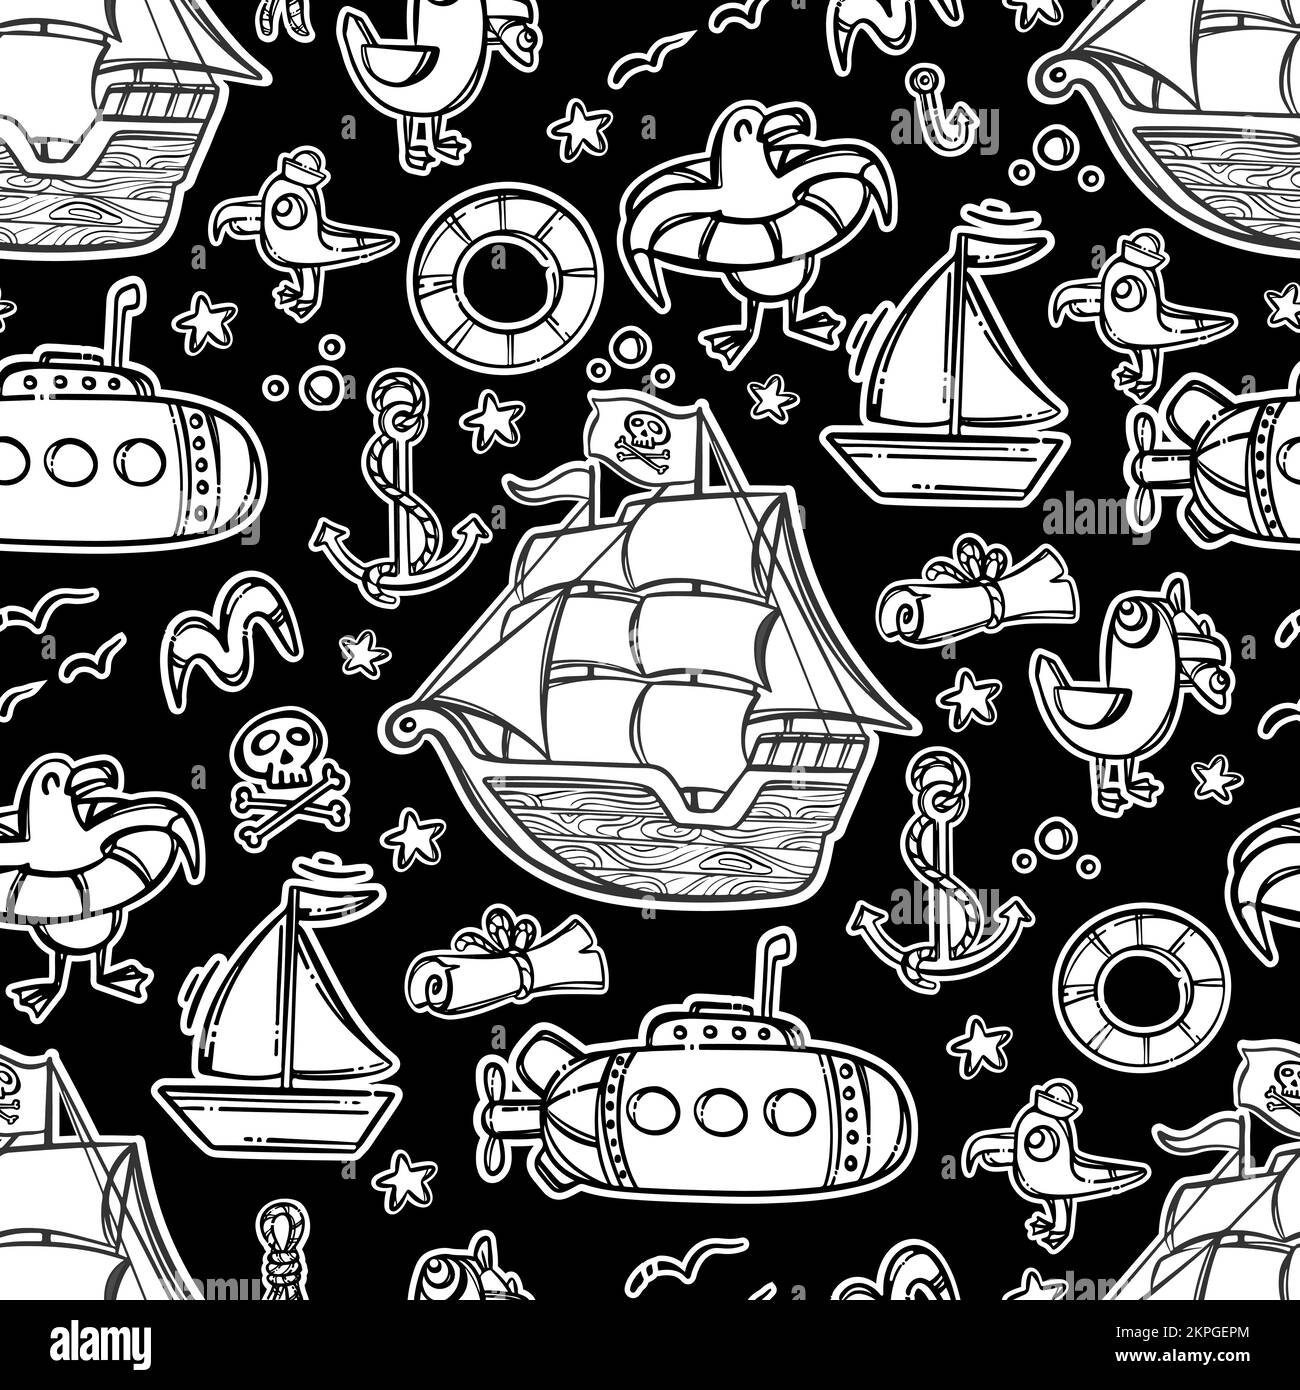 PIRATENSCHIFF MONOCHROM Cartoon handgezeichnetes Bild Seamless Pattern Vector Illustration auf schwarzem Hintergrund mit verschiedenen Meeresattributen Märchen für Stock Vektor